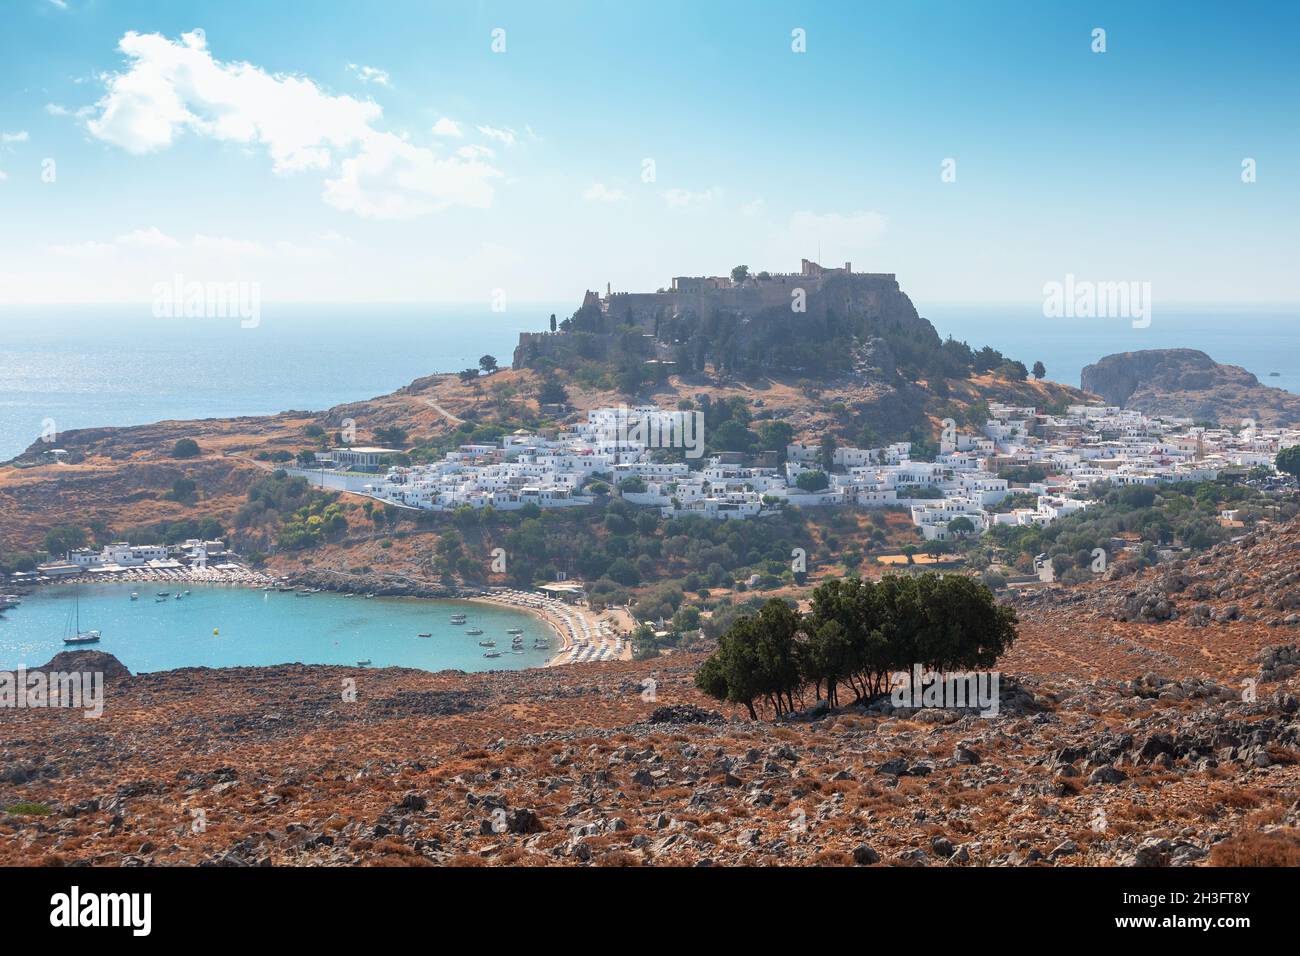 Vista panoramica della città vecchia di Lindos in Grecia con l'acropoli in cima alla collina. Foto Stock